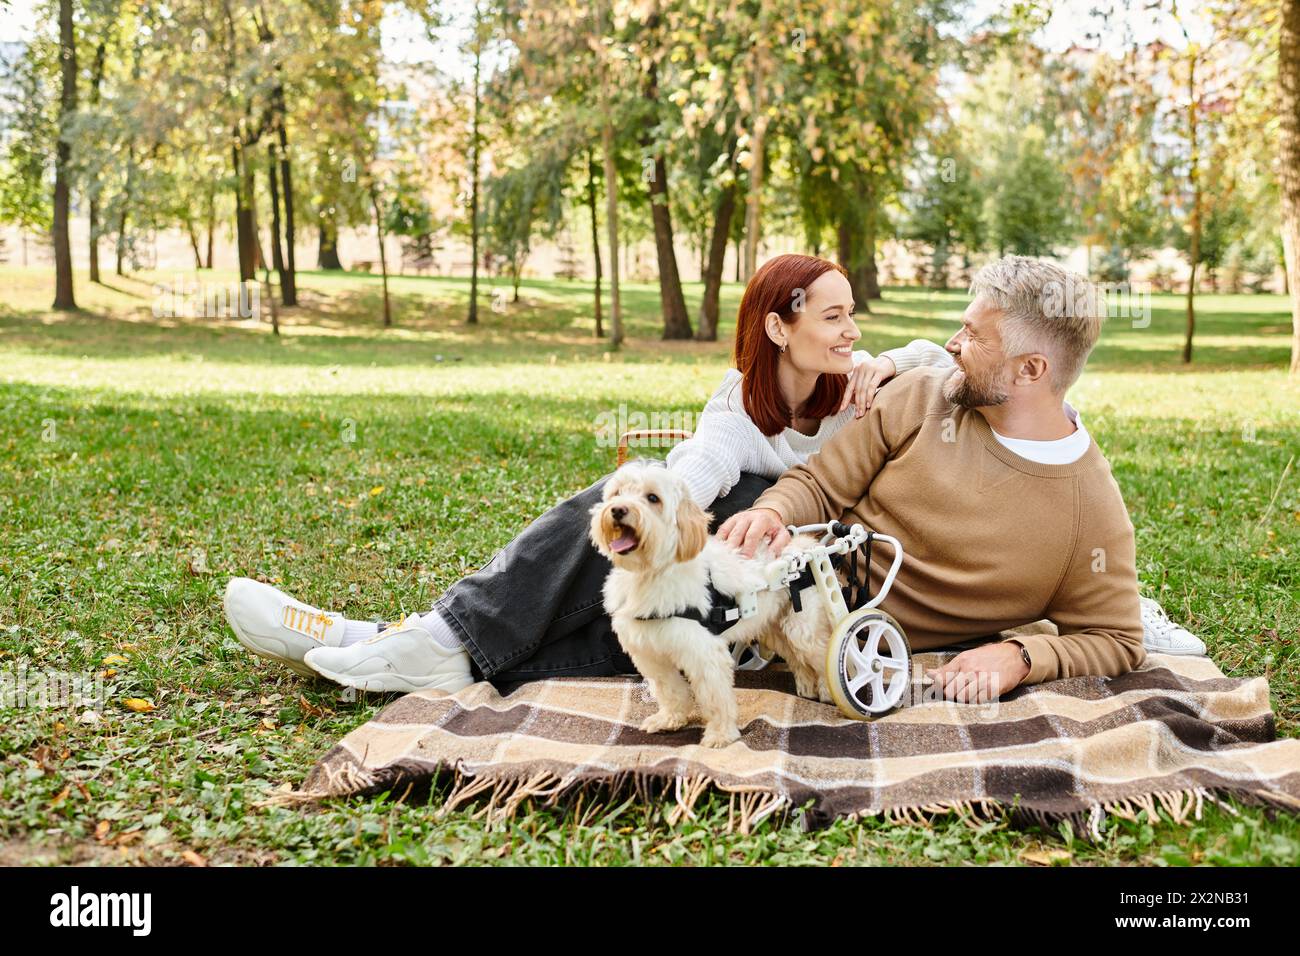 Ein Mann und eine Frau sitzen auf einer Decke mit ihrem geliebten Hund in einer friedlichen Parklandschaft. Stockfoto